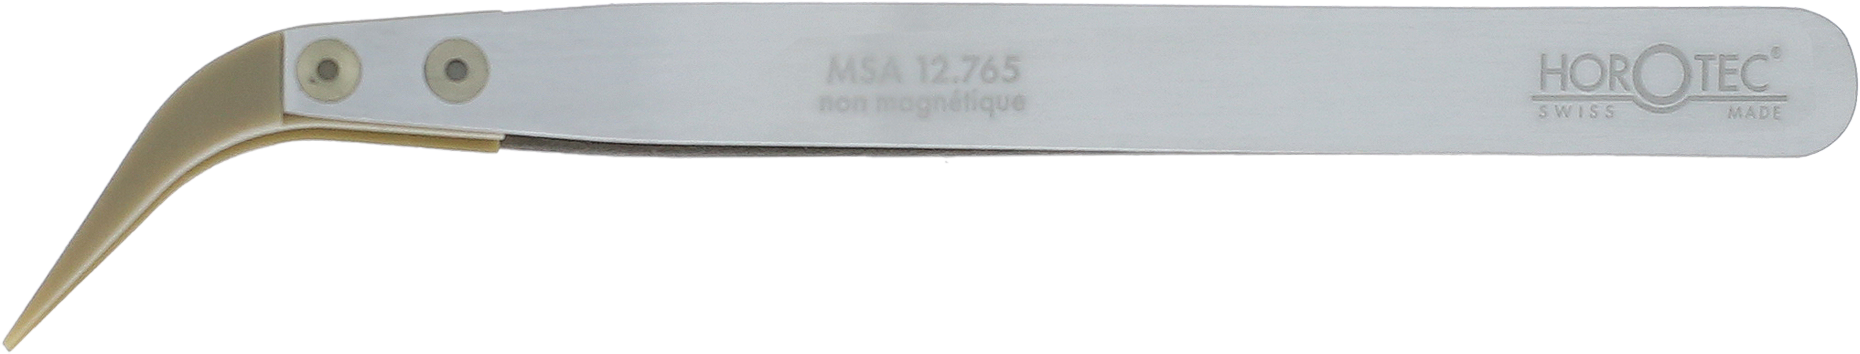 MSA12.765